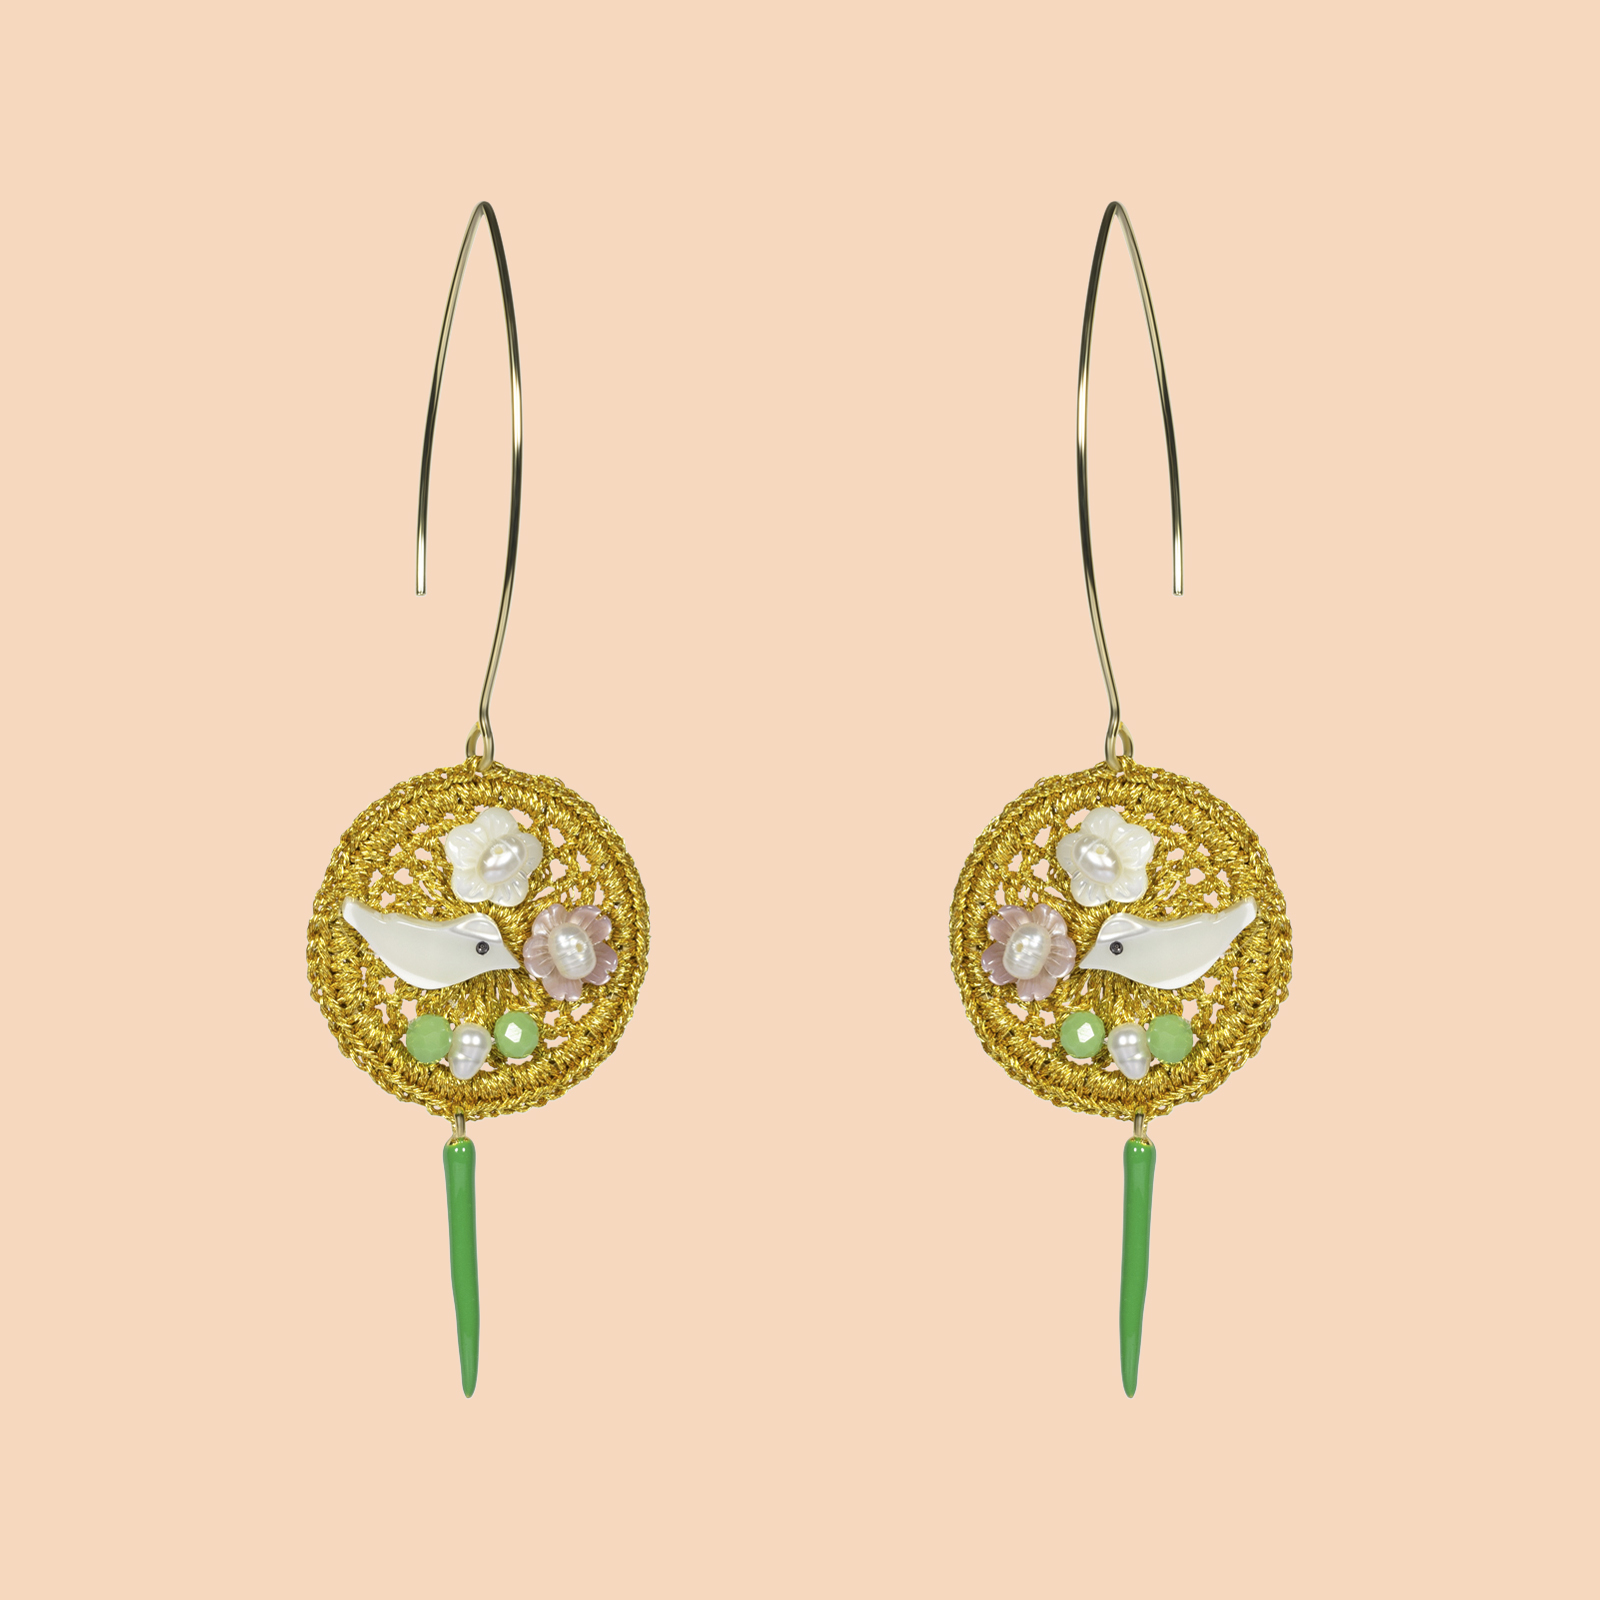 Little Dreamcatcher gold earrings